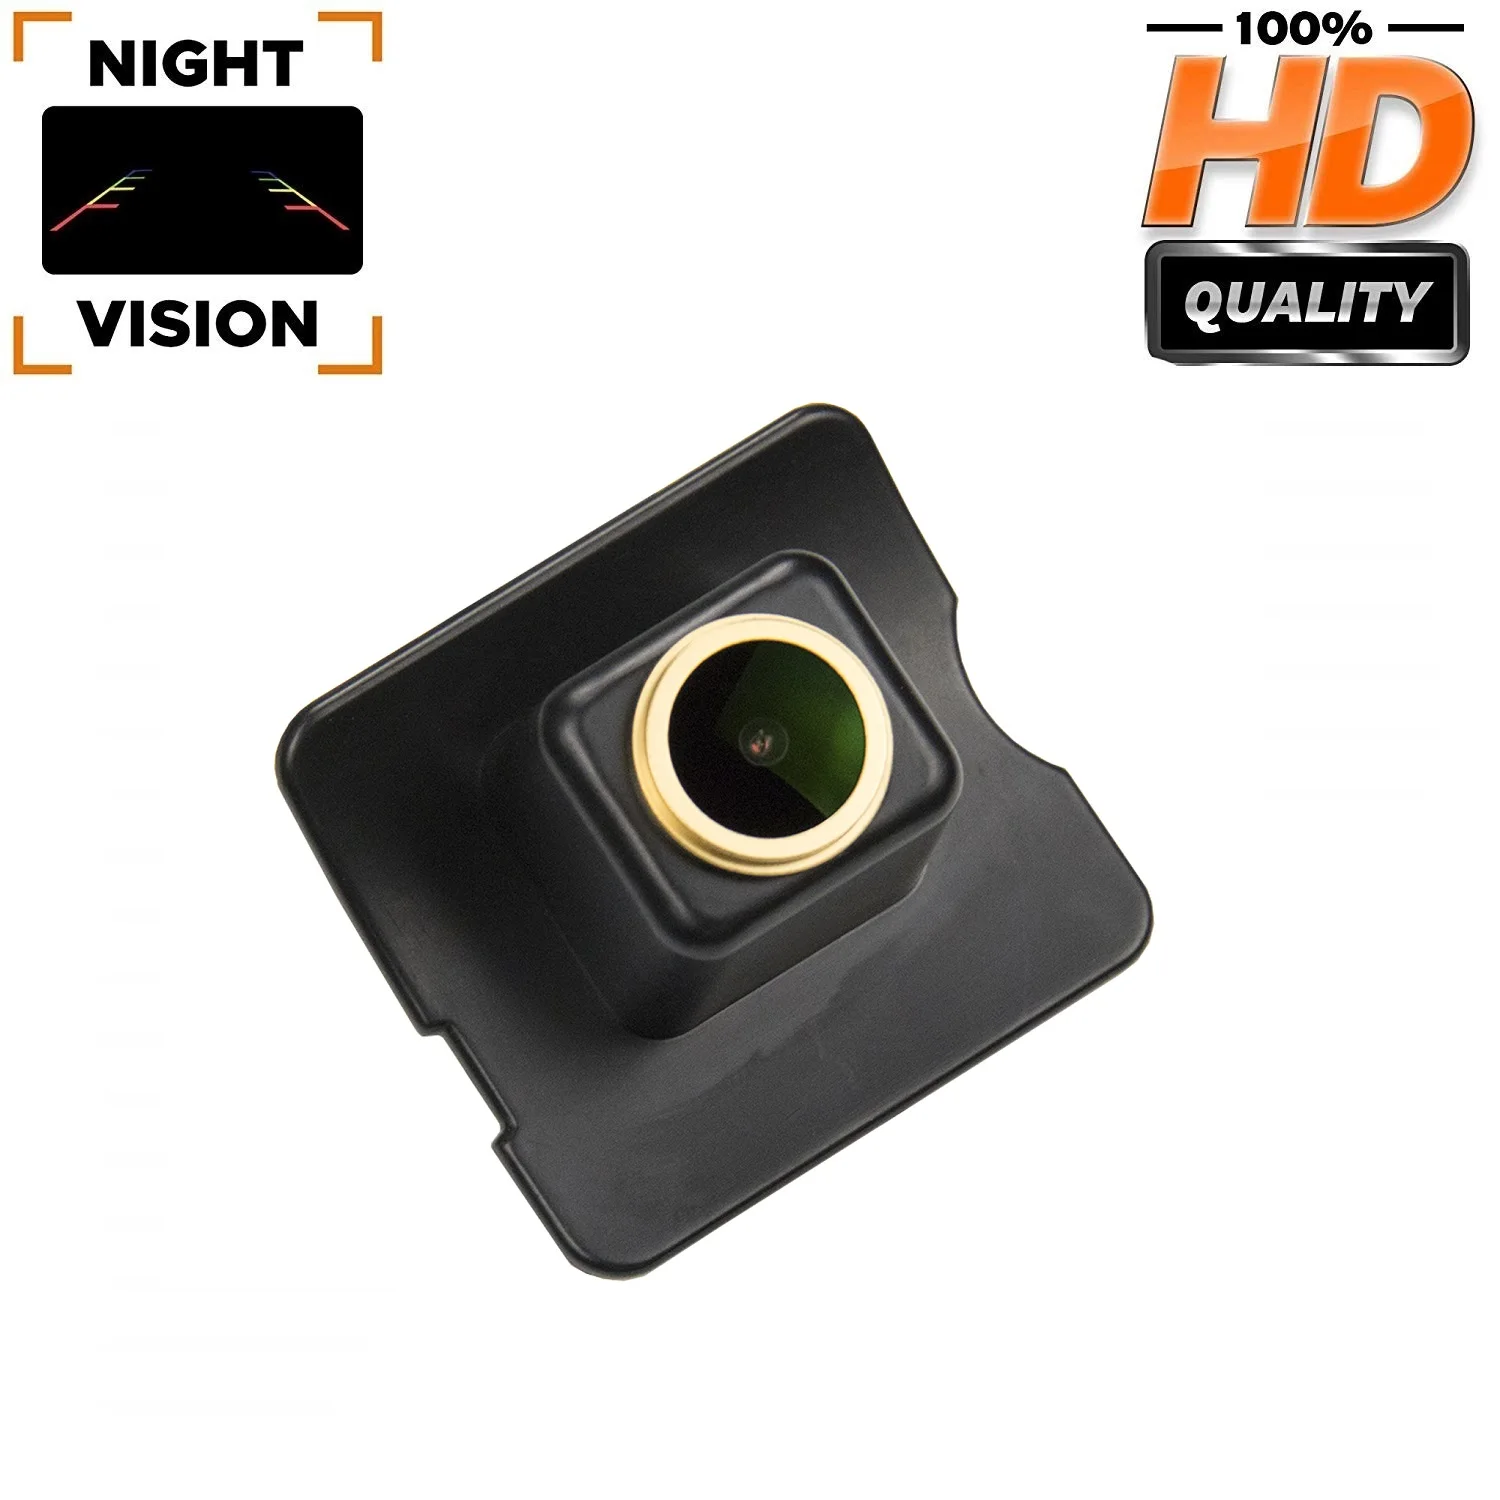 

HD 1280x720p Rear View Night Vison Backup camera for MERCEDES W164 W163 W251 X164 ML400 ML350 GL450 GL350 GL500 R-Class (W251)